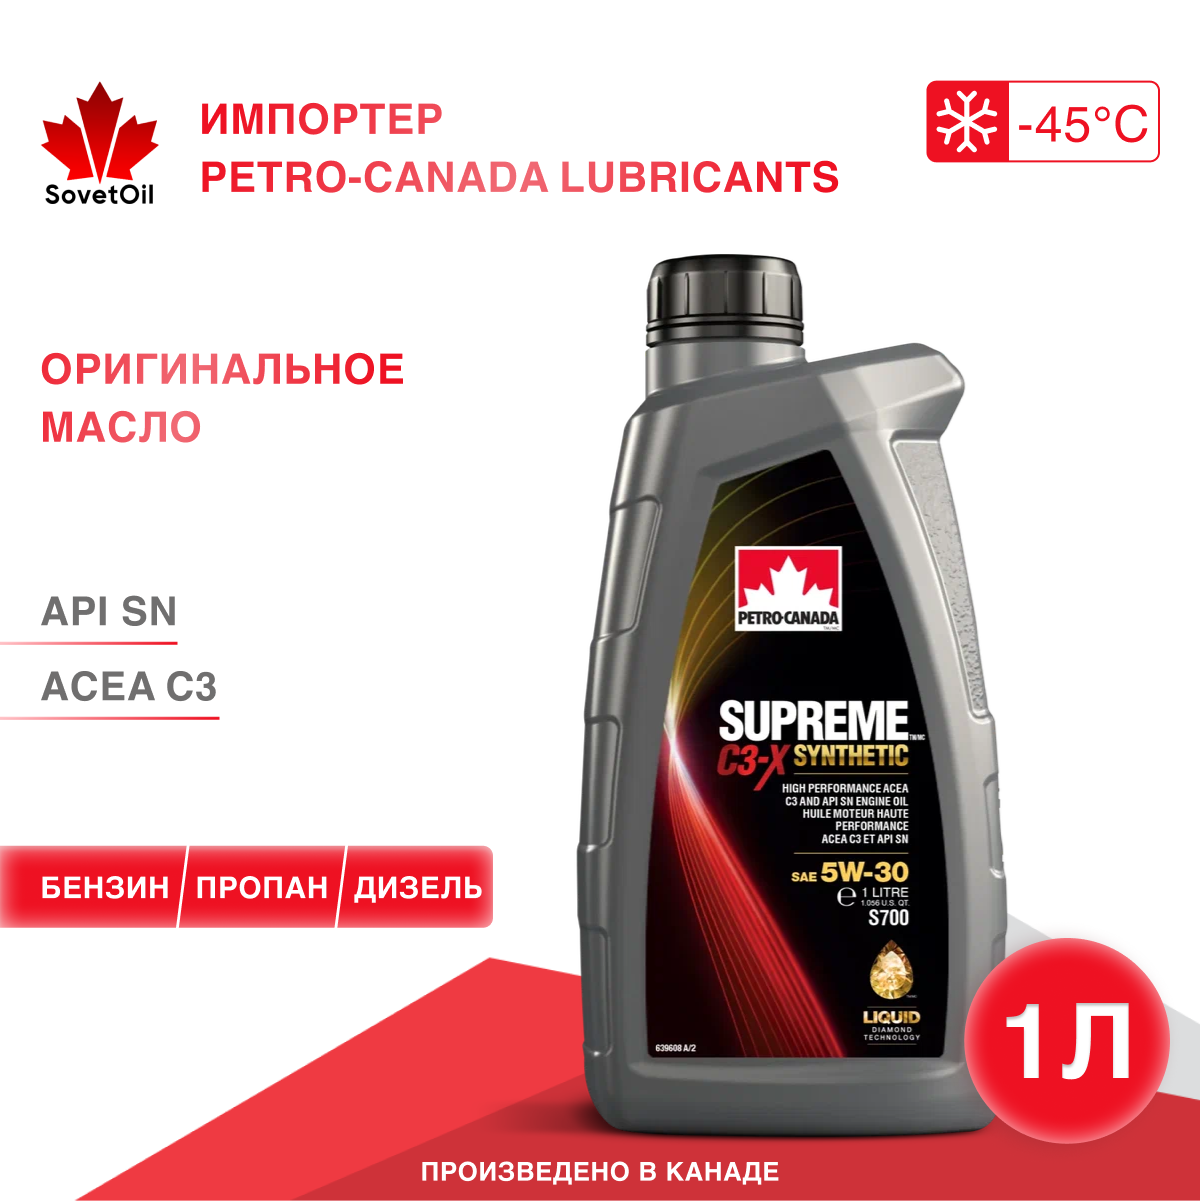 Синтетическое масло для бензиновых и дизельных двигателей Petro-Canada Supreme C3-X Syntethic 5W-30 1л